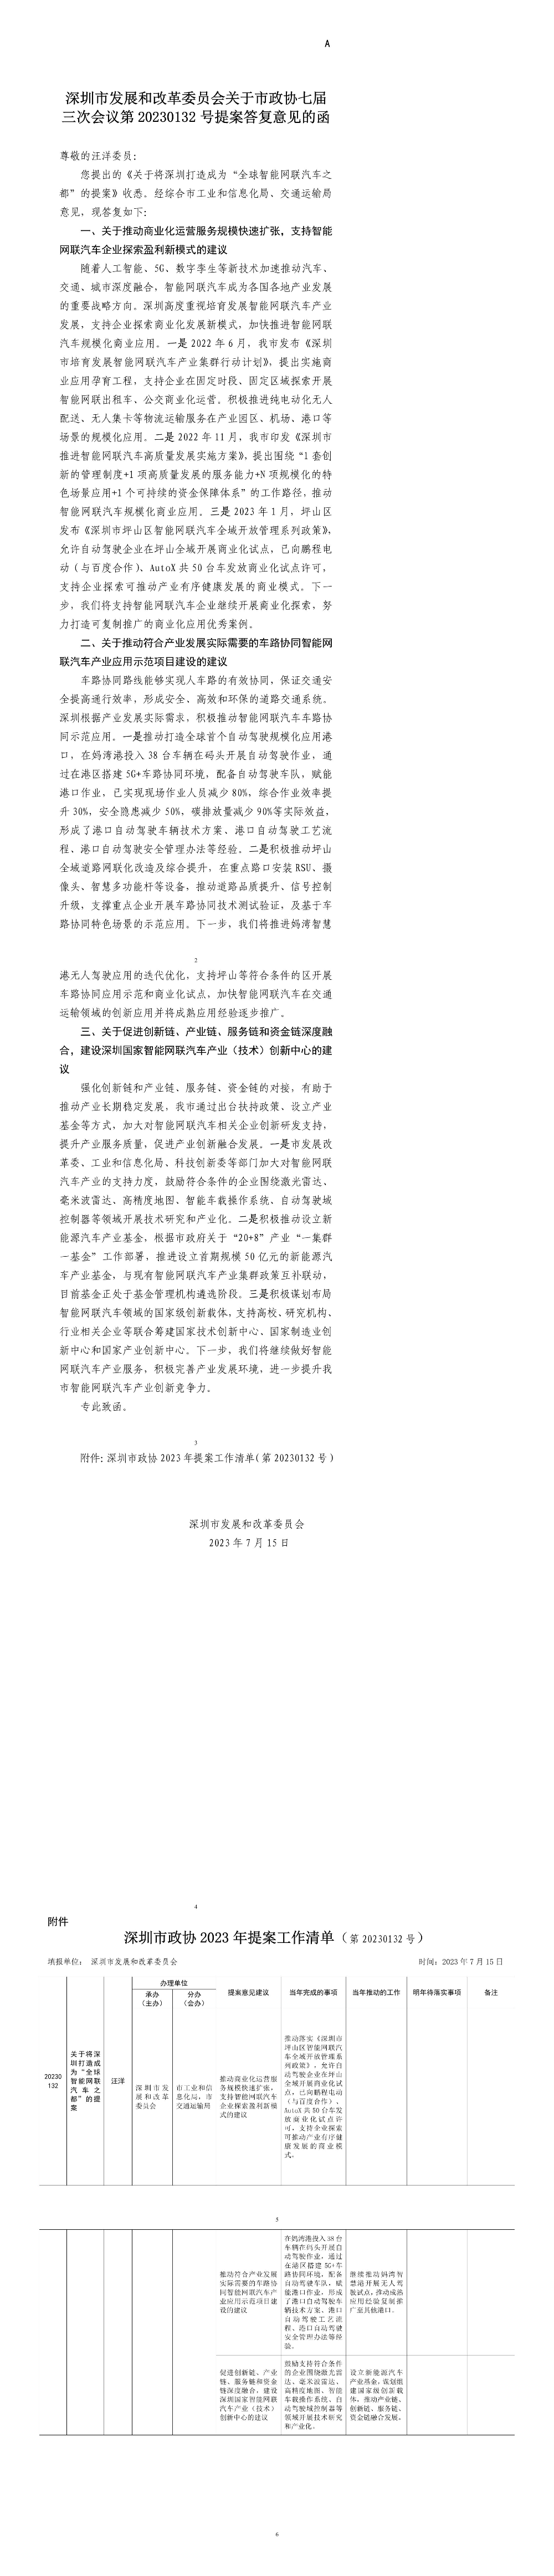 深圳市发展和改革委员会关于市政协七届三次会议第20230132号提案答复意见的函.jpg